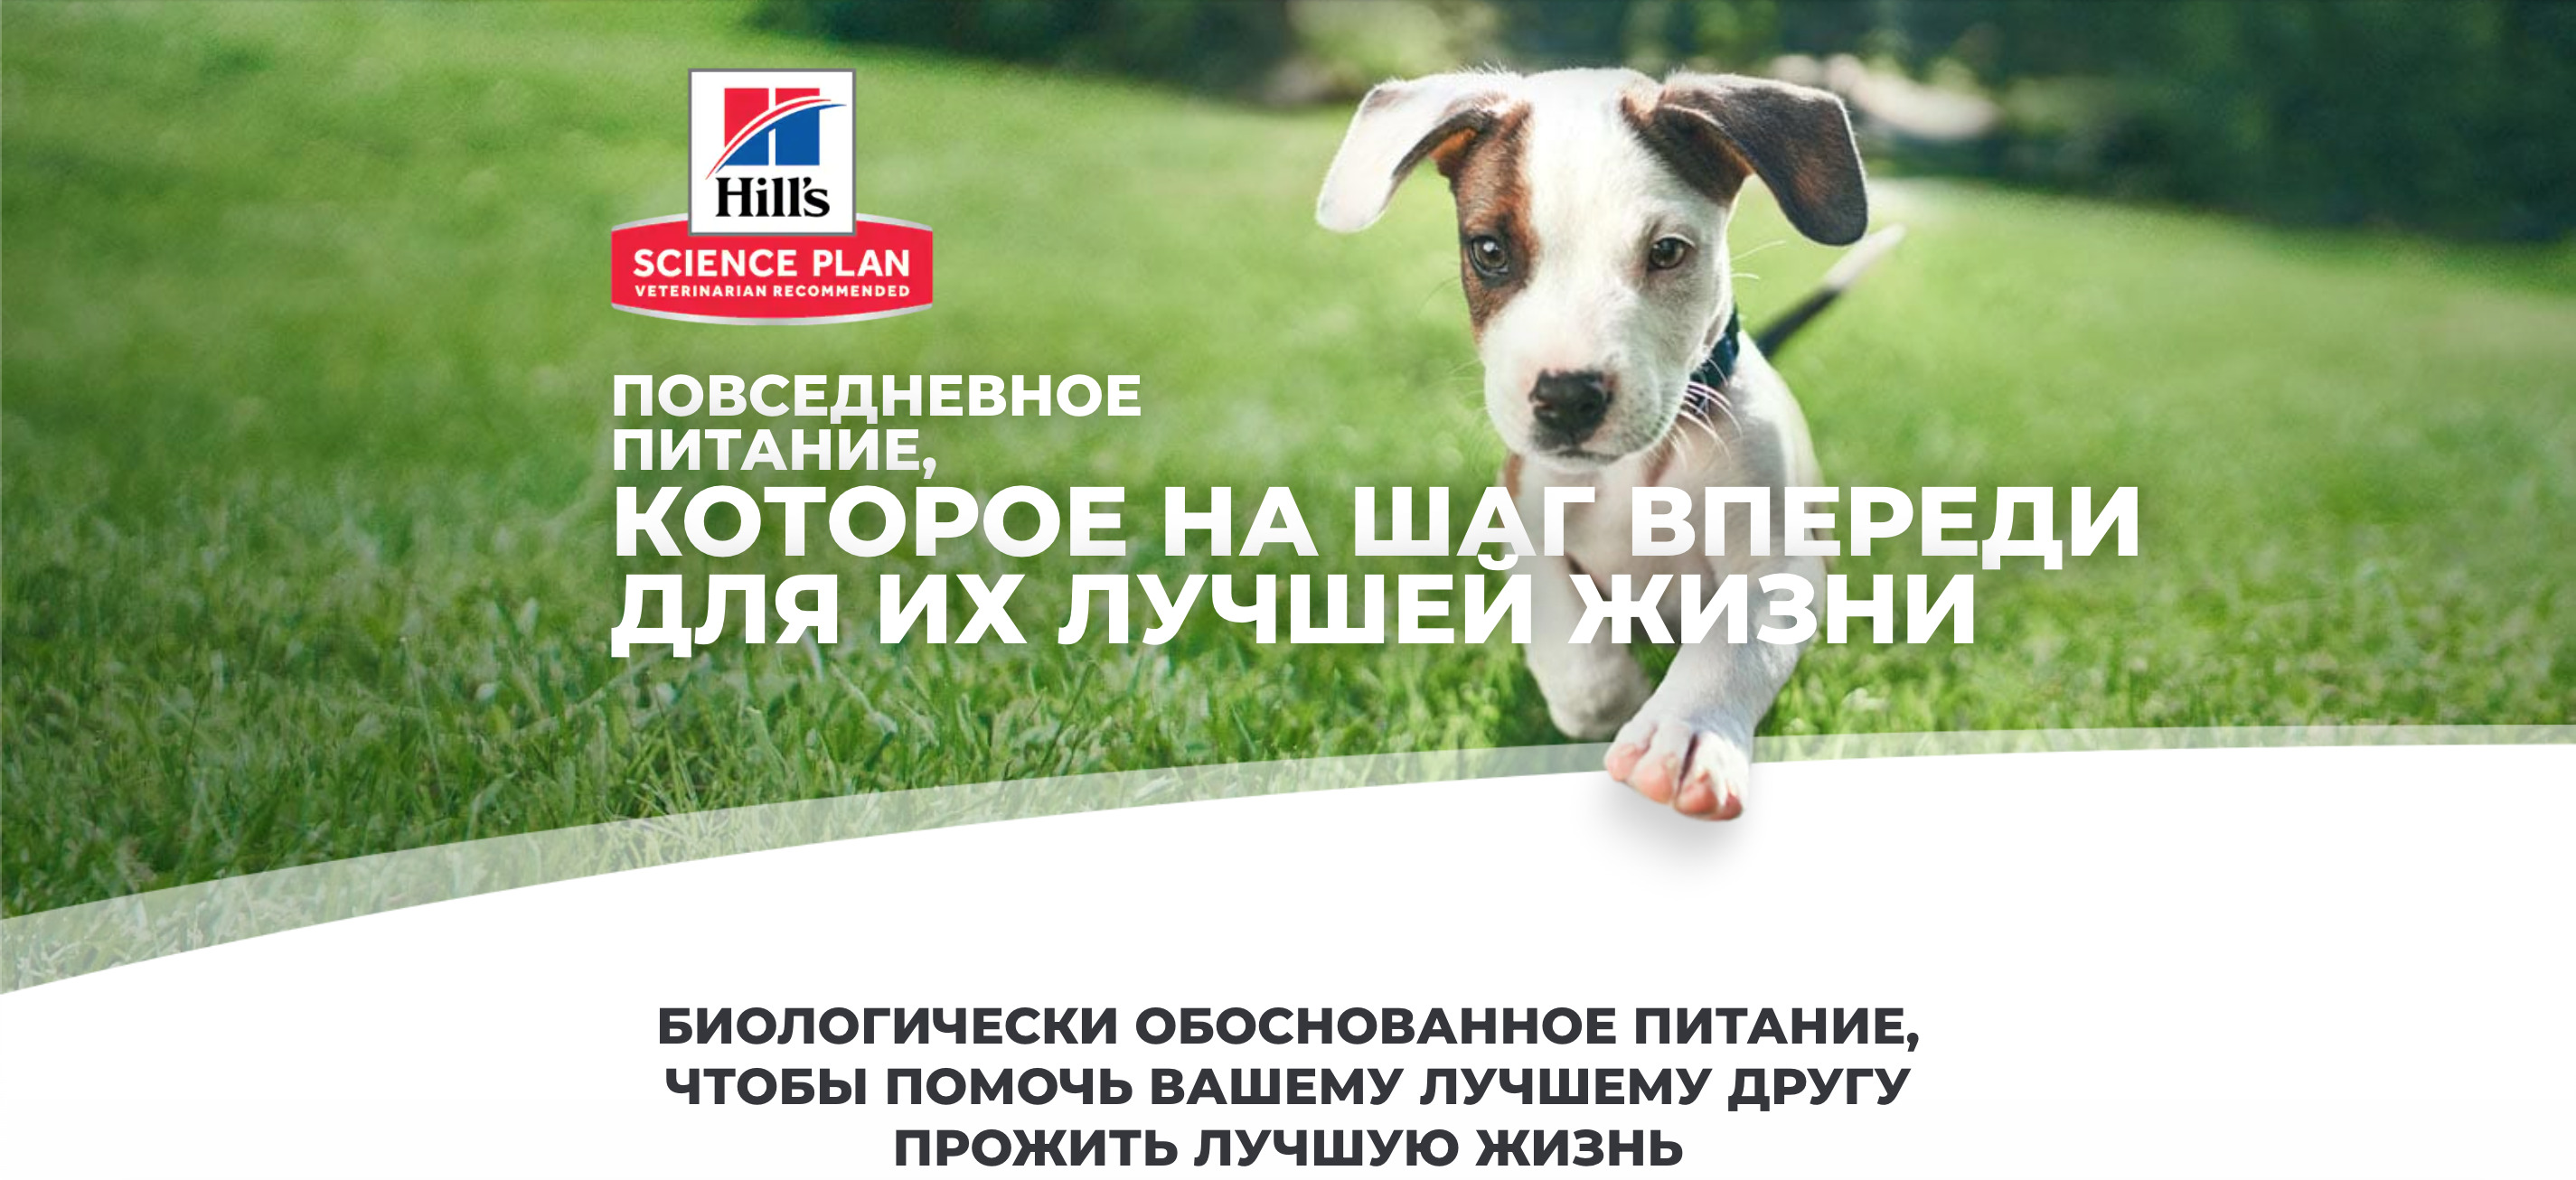 купить Сухие корма для собак Hill's Science Plan с бесплатной доставкой в Калининграде